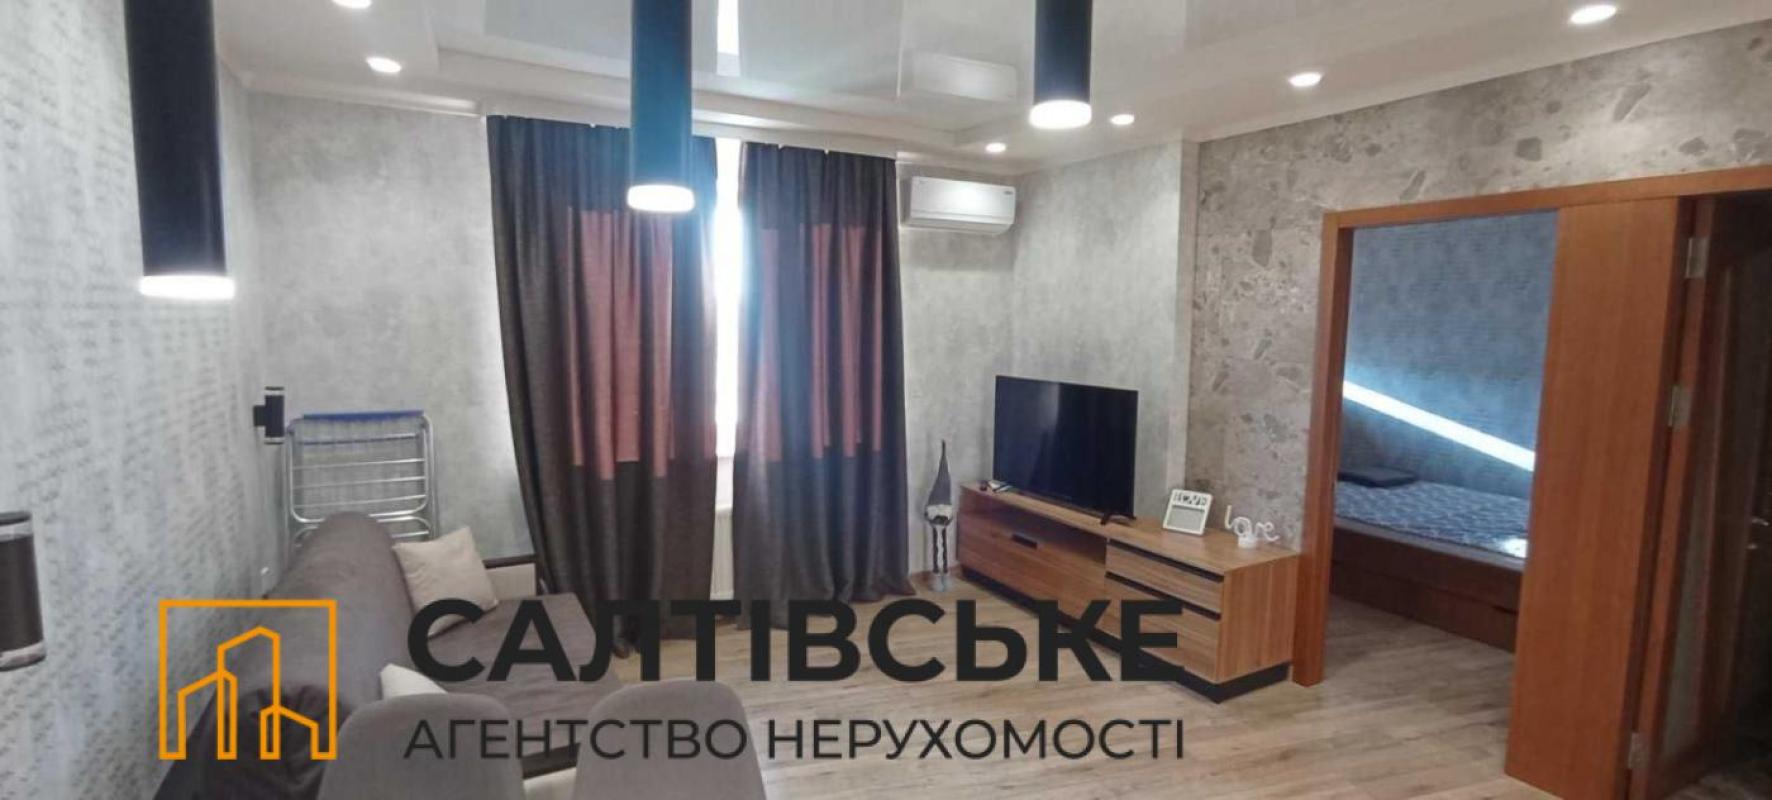 Sale 1 bedroom-(s) apartment 34 sq. m., Akademika Pavlova Street 158 корпус 2